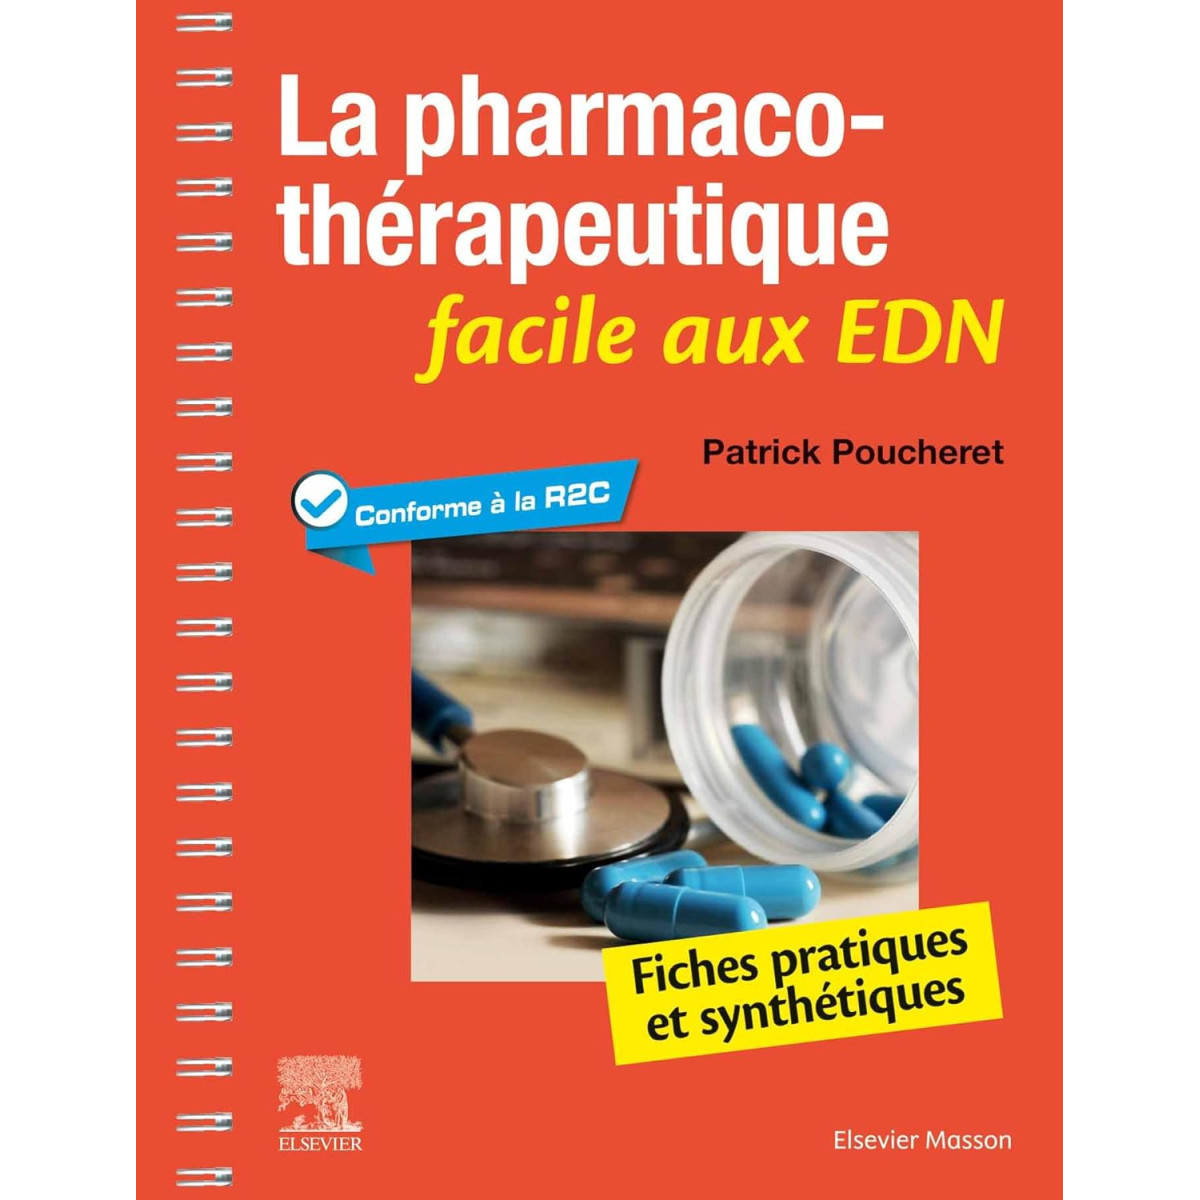 La pharmacothérapeutique facile aux EDN